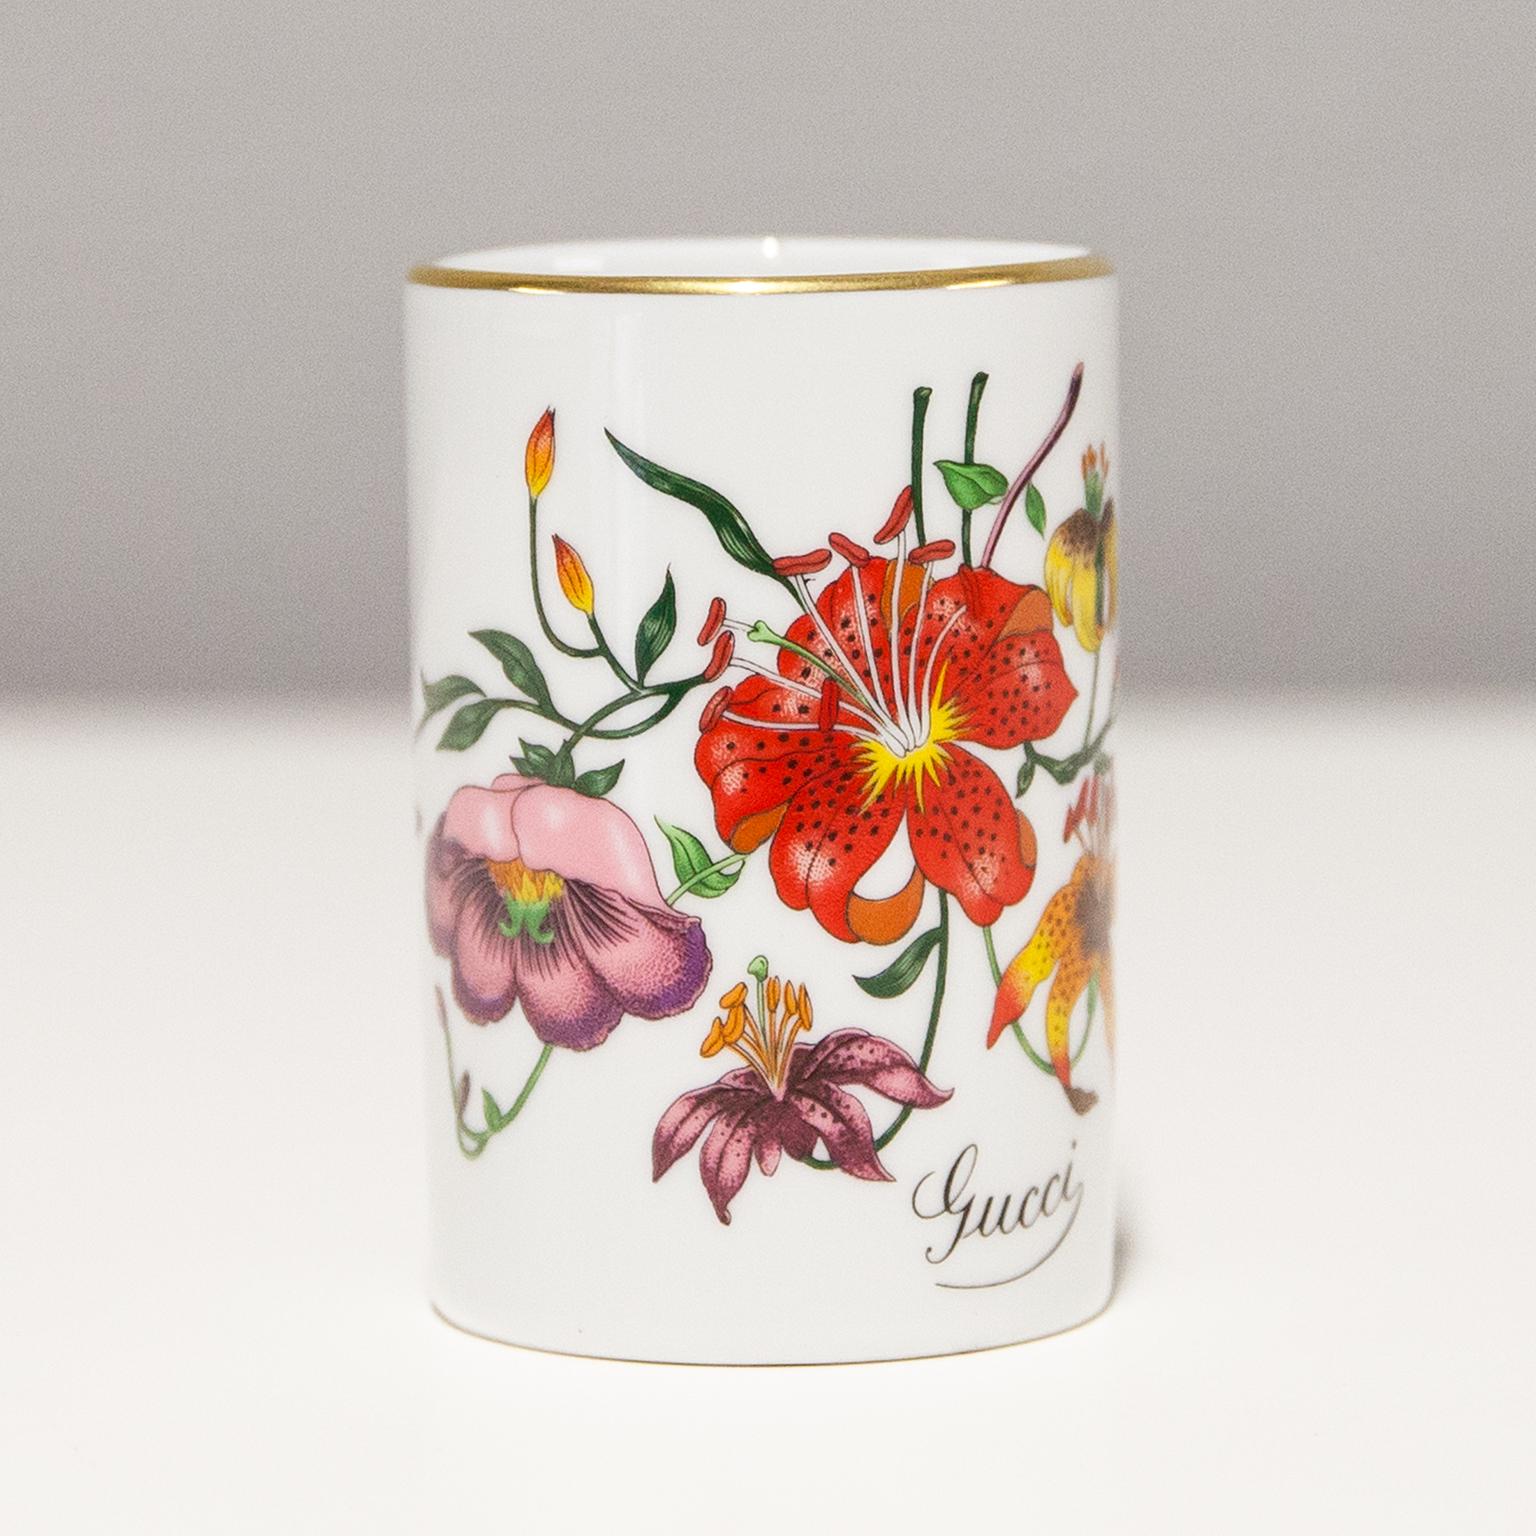 Mug ou tasse à thé en porcelaine de Gucci Vintage avec motif floral peint à la main. Signé Gucci et réalisé par Richard Ginori dans les années 1970. Cette magnifique pièce est en très bon état vintage.